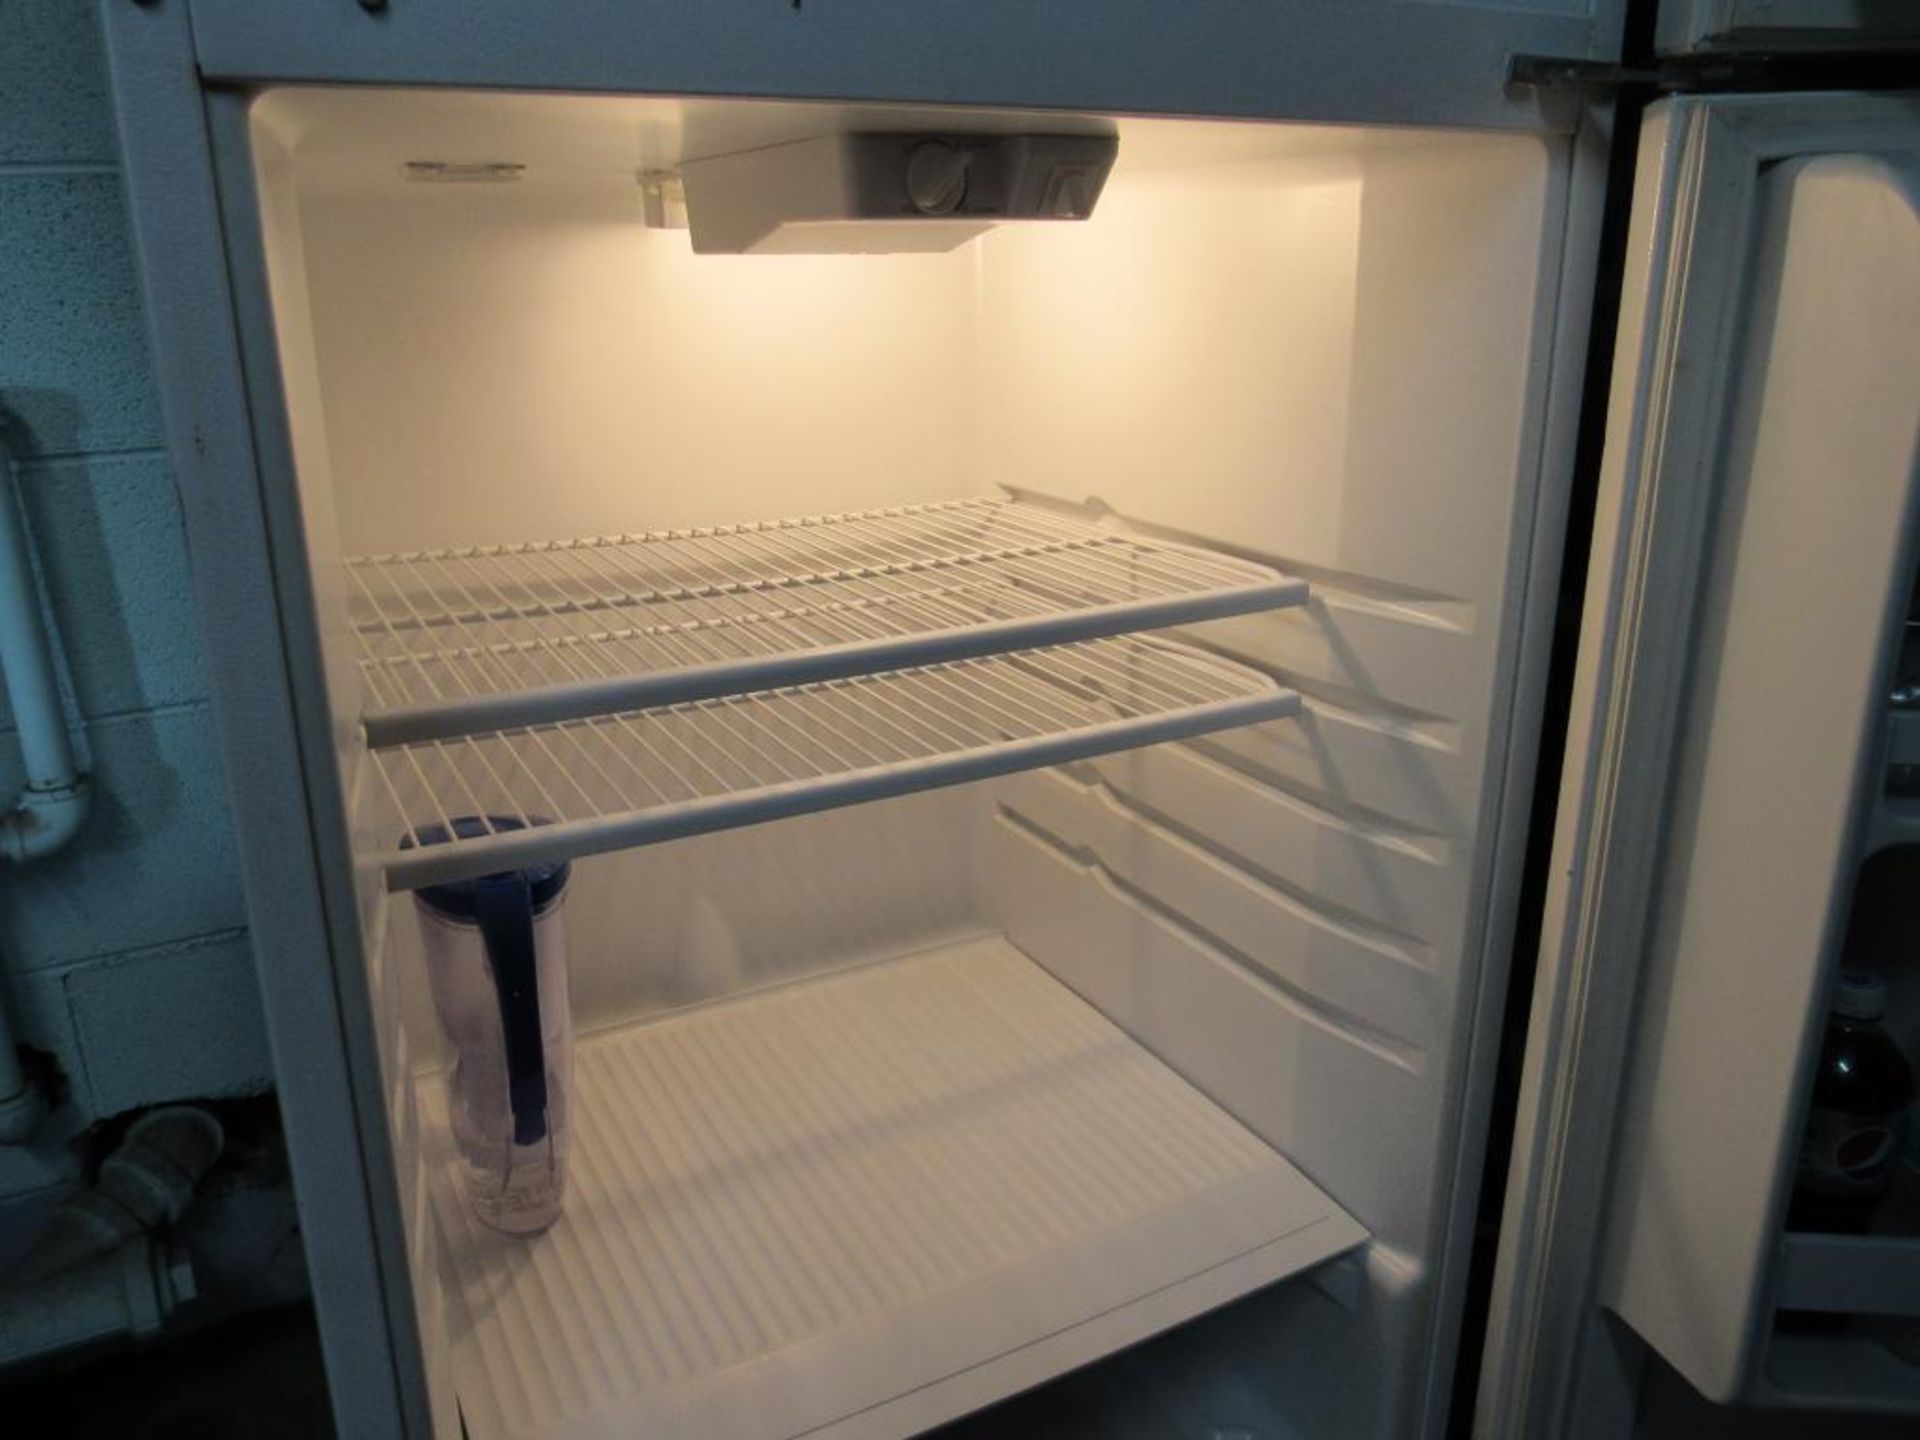 Refrigerator - Image 6 of 7